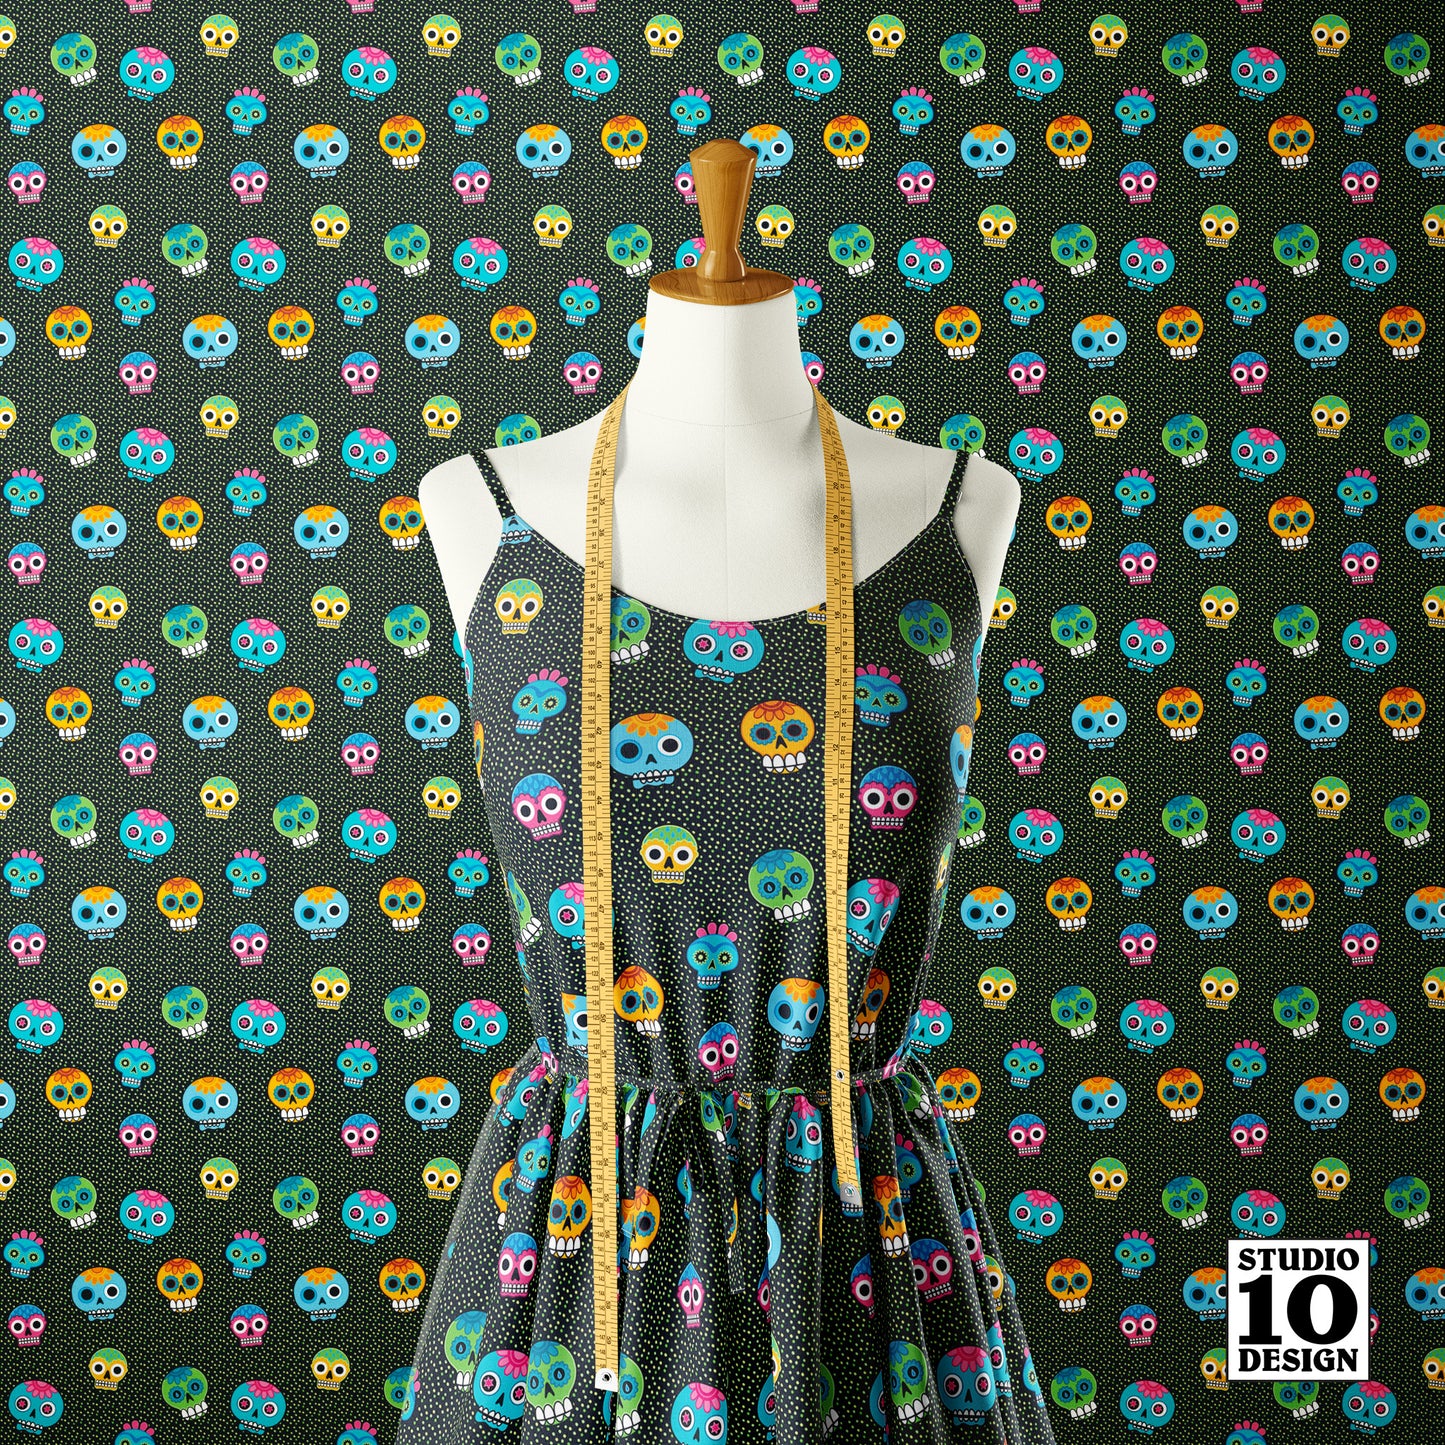 Dia de los Muertos (Green) Printed Fabric by Studio Ten Design